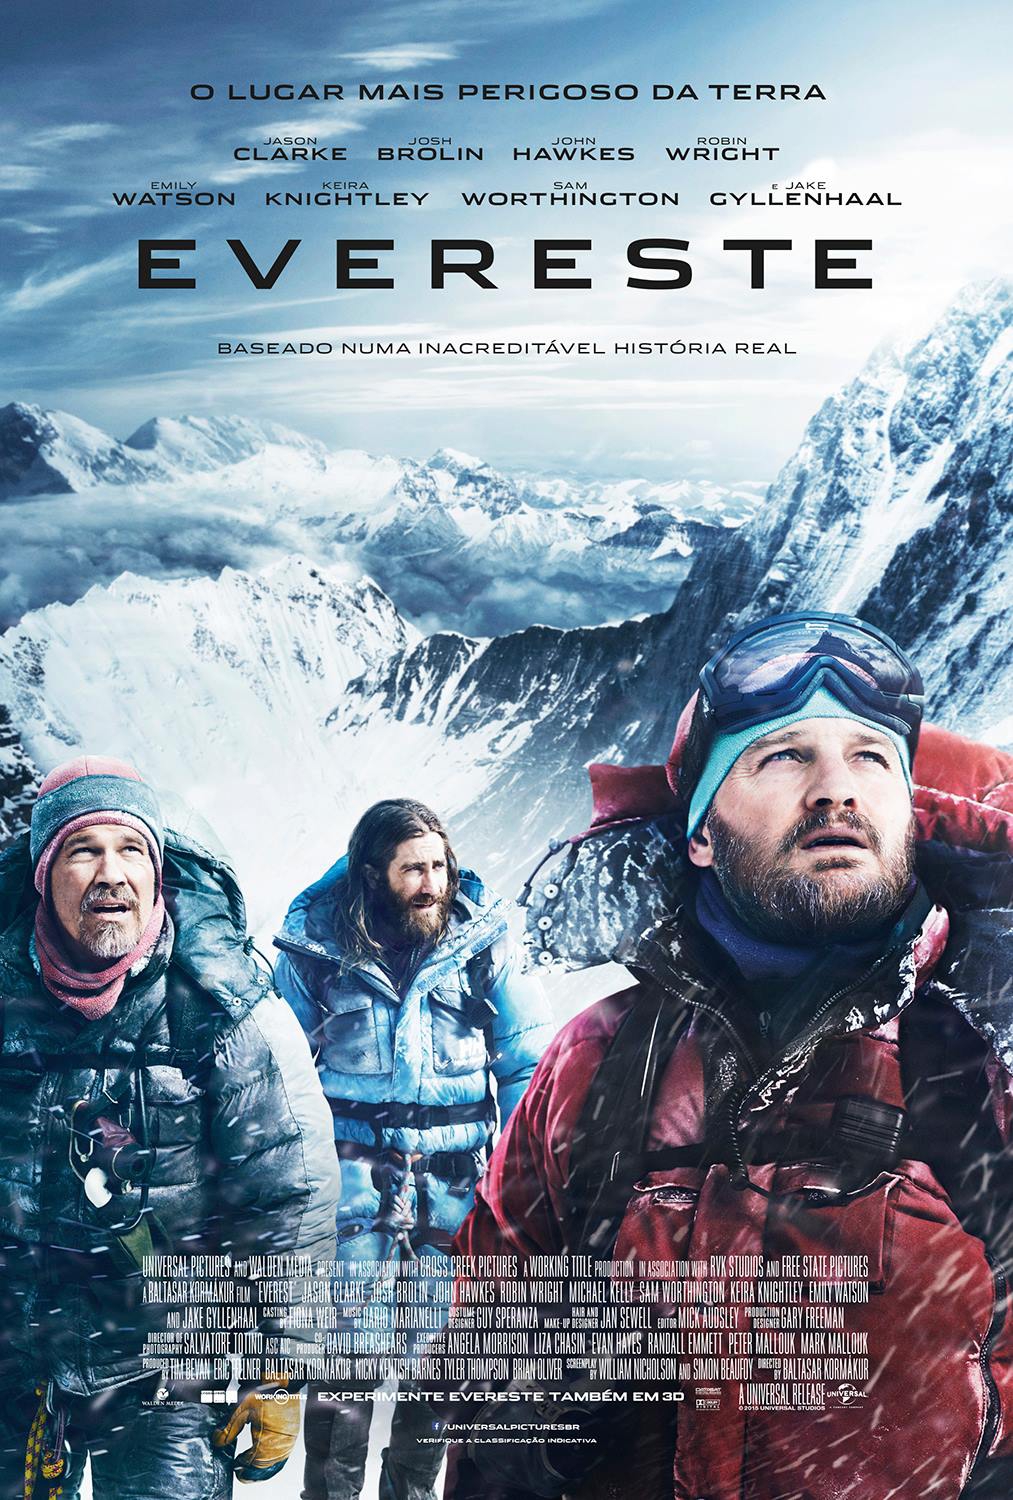  Evereste (2015) Poster 